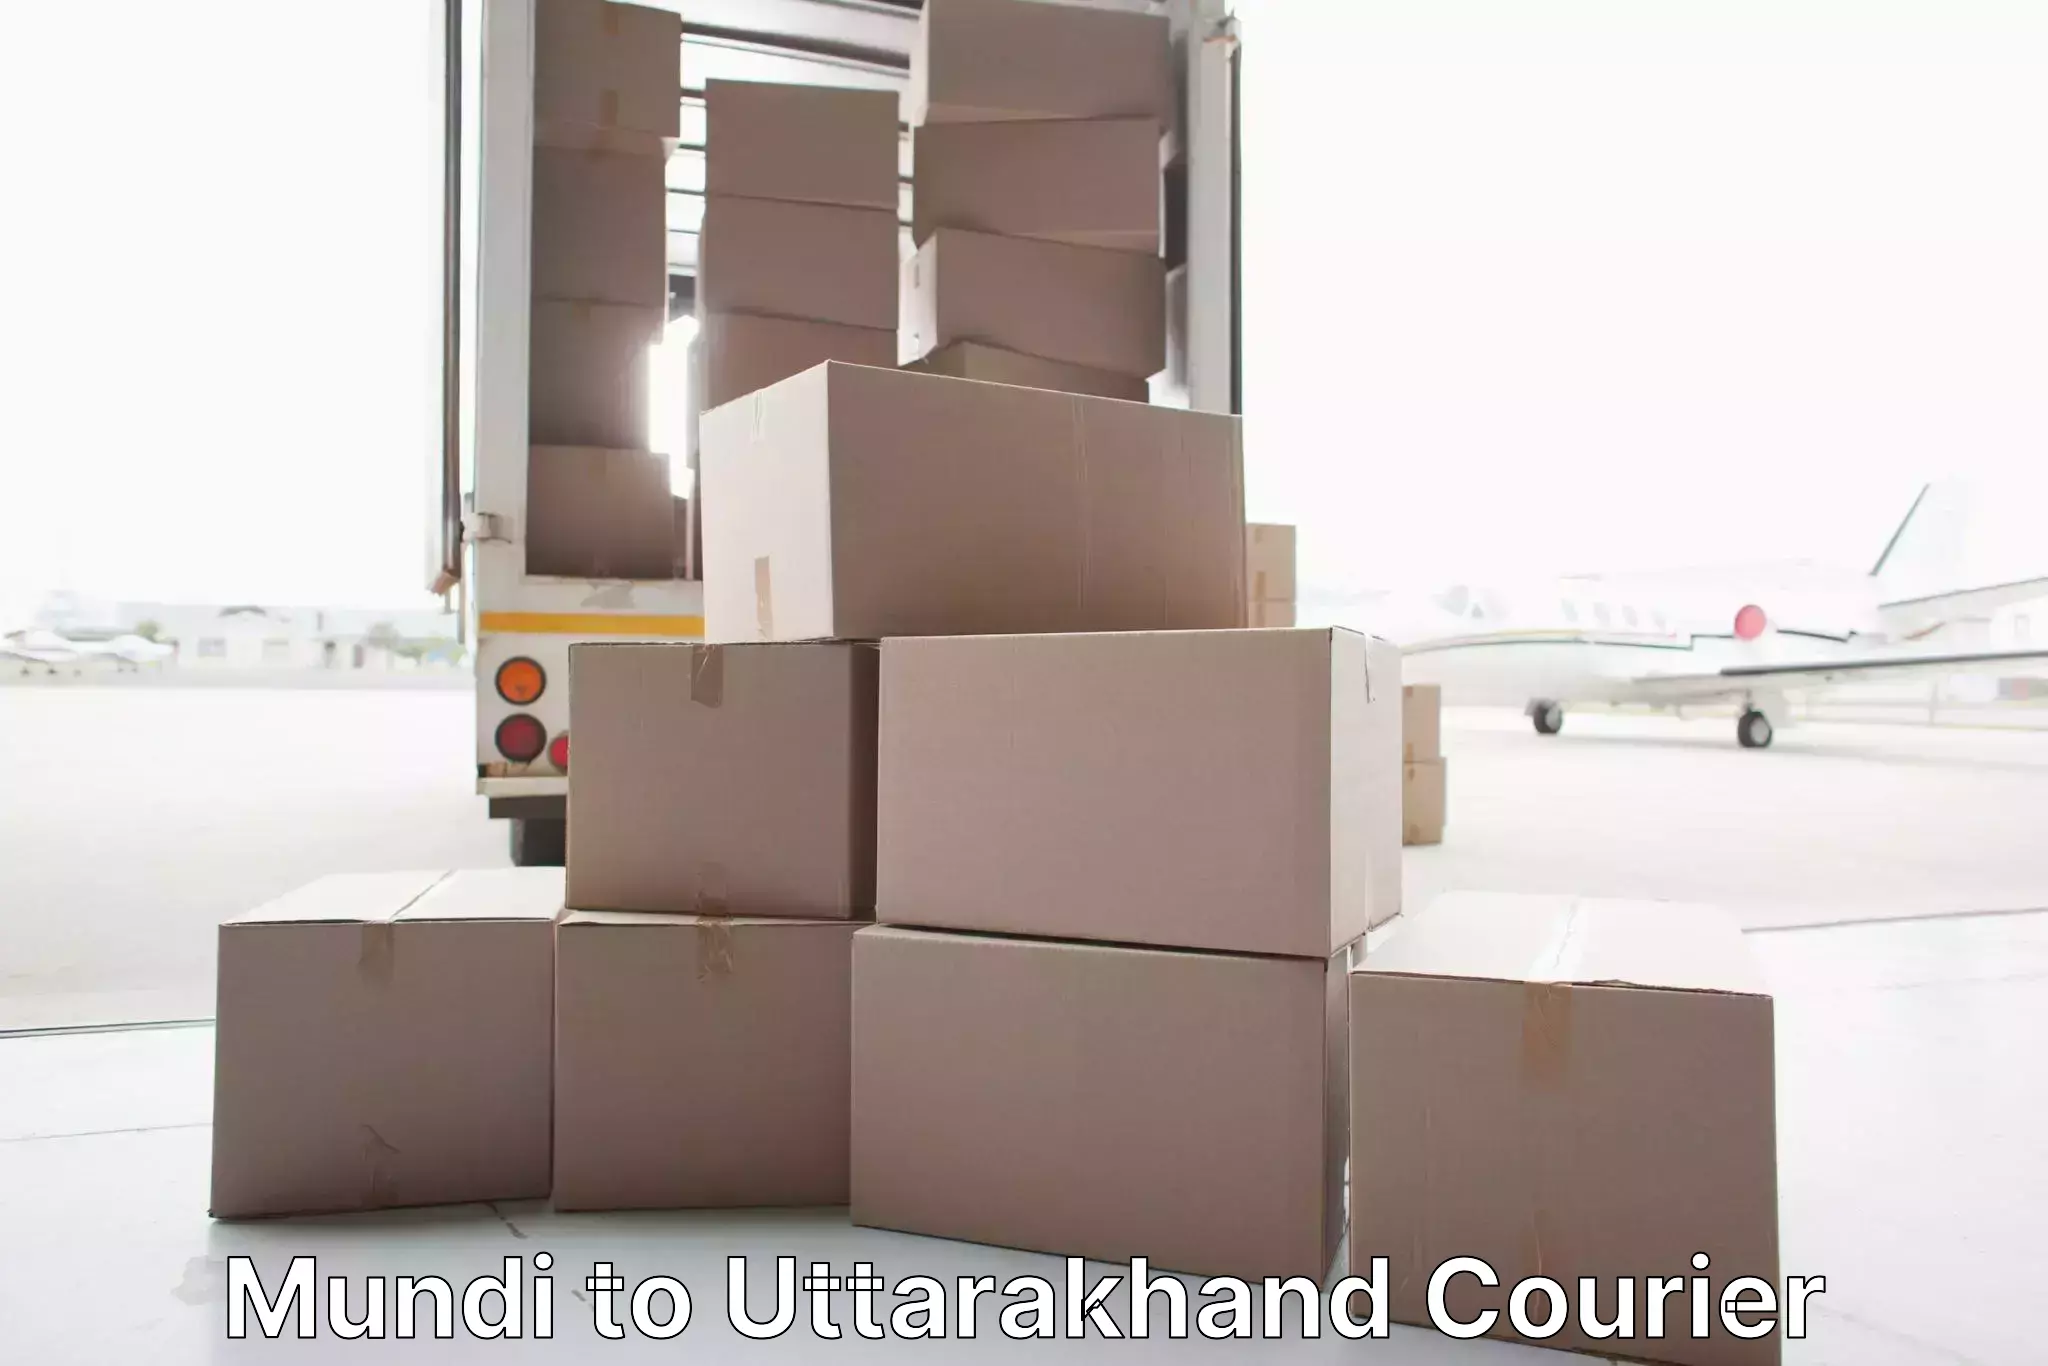 Home moving experts Mundi to Rishikesh